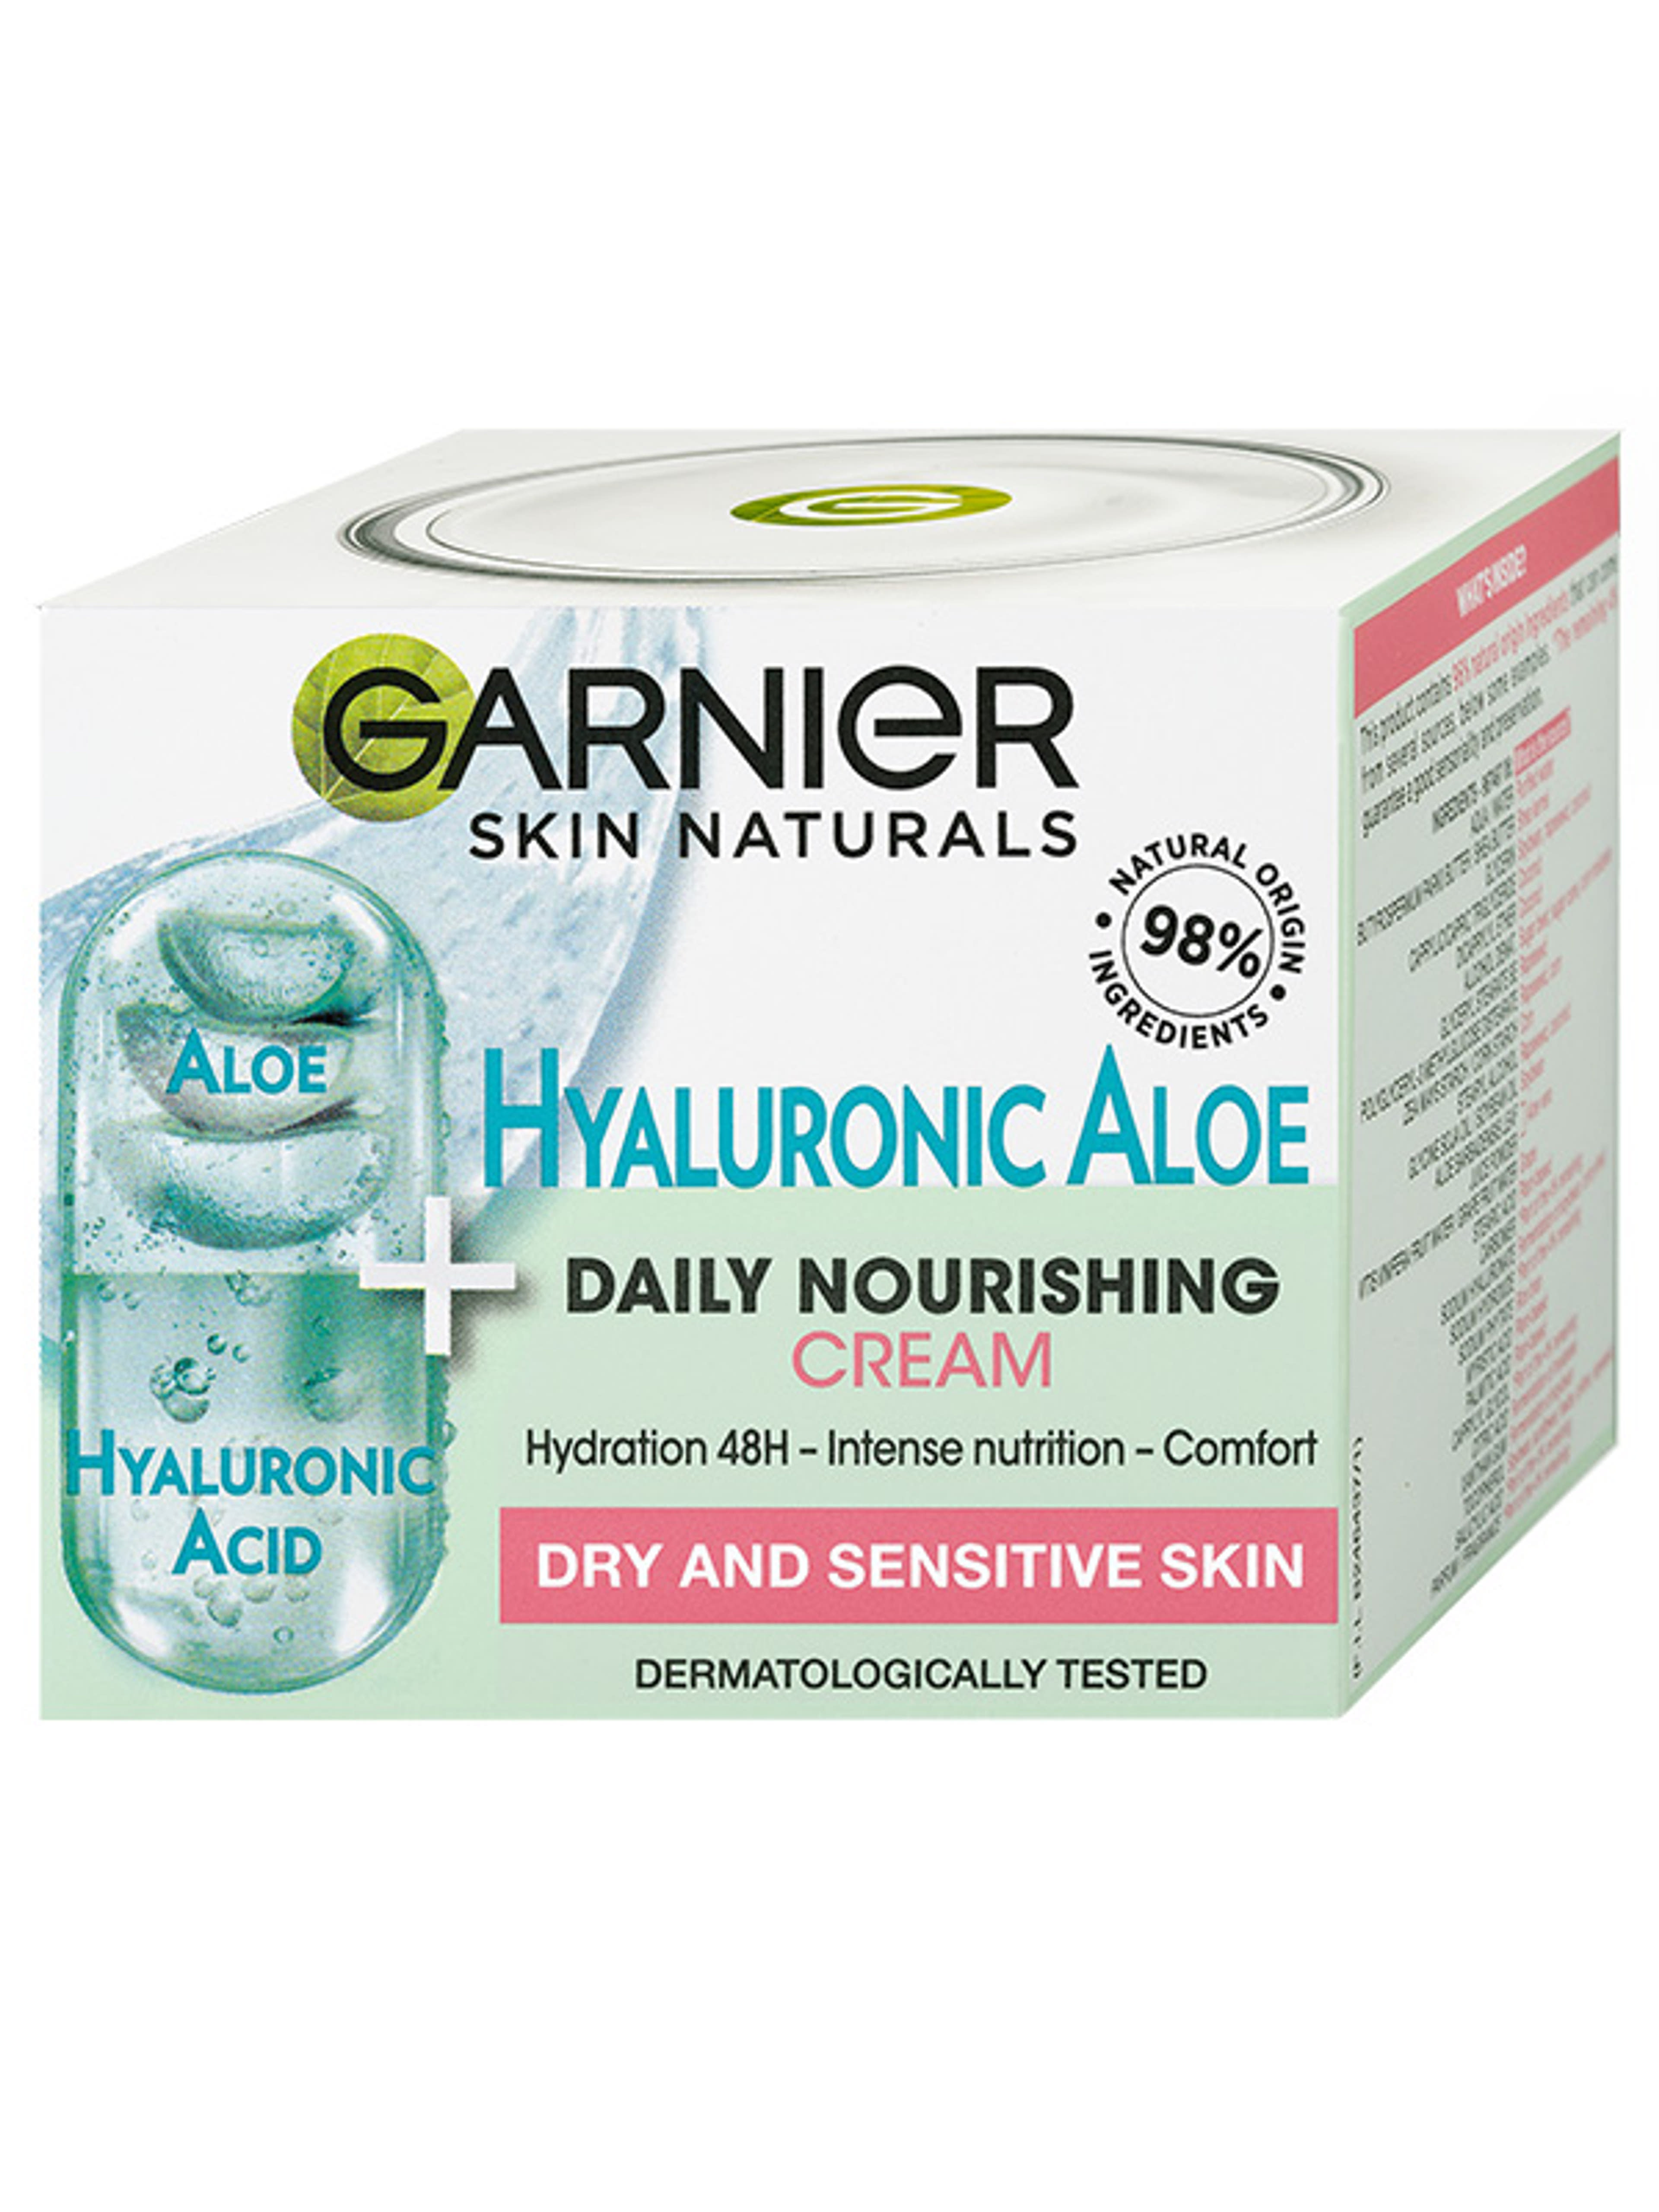 Garnier Skin Naturals Hyaluronic Aloe krém - 50 ml-1